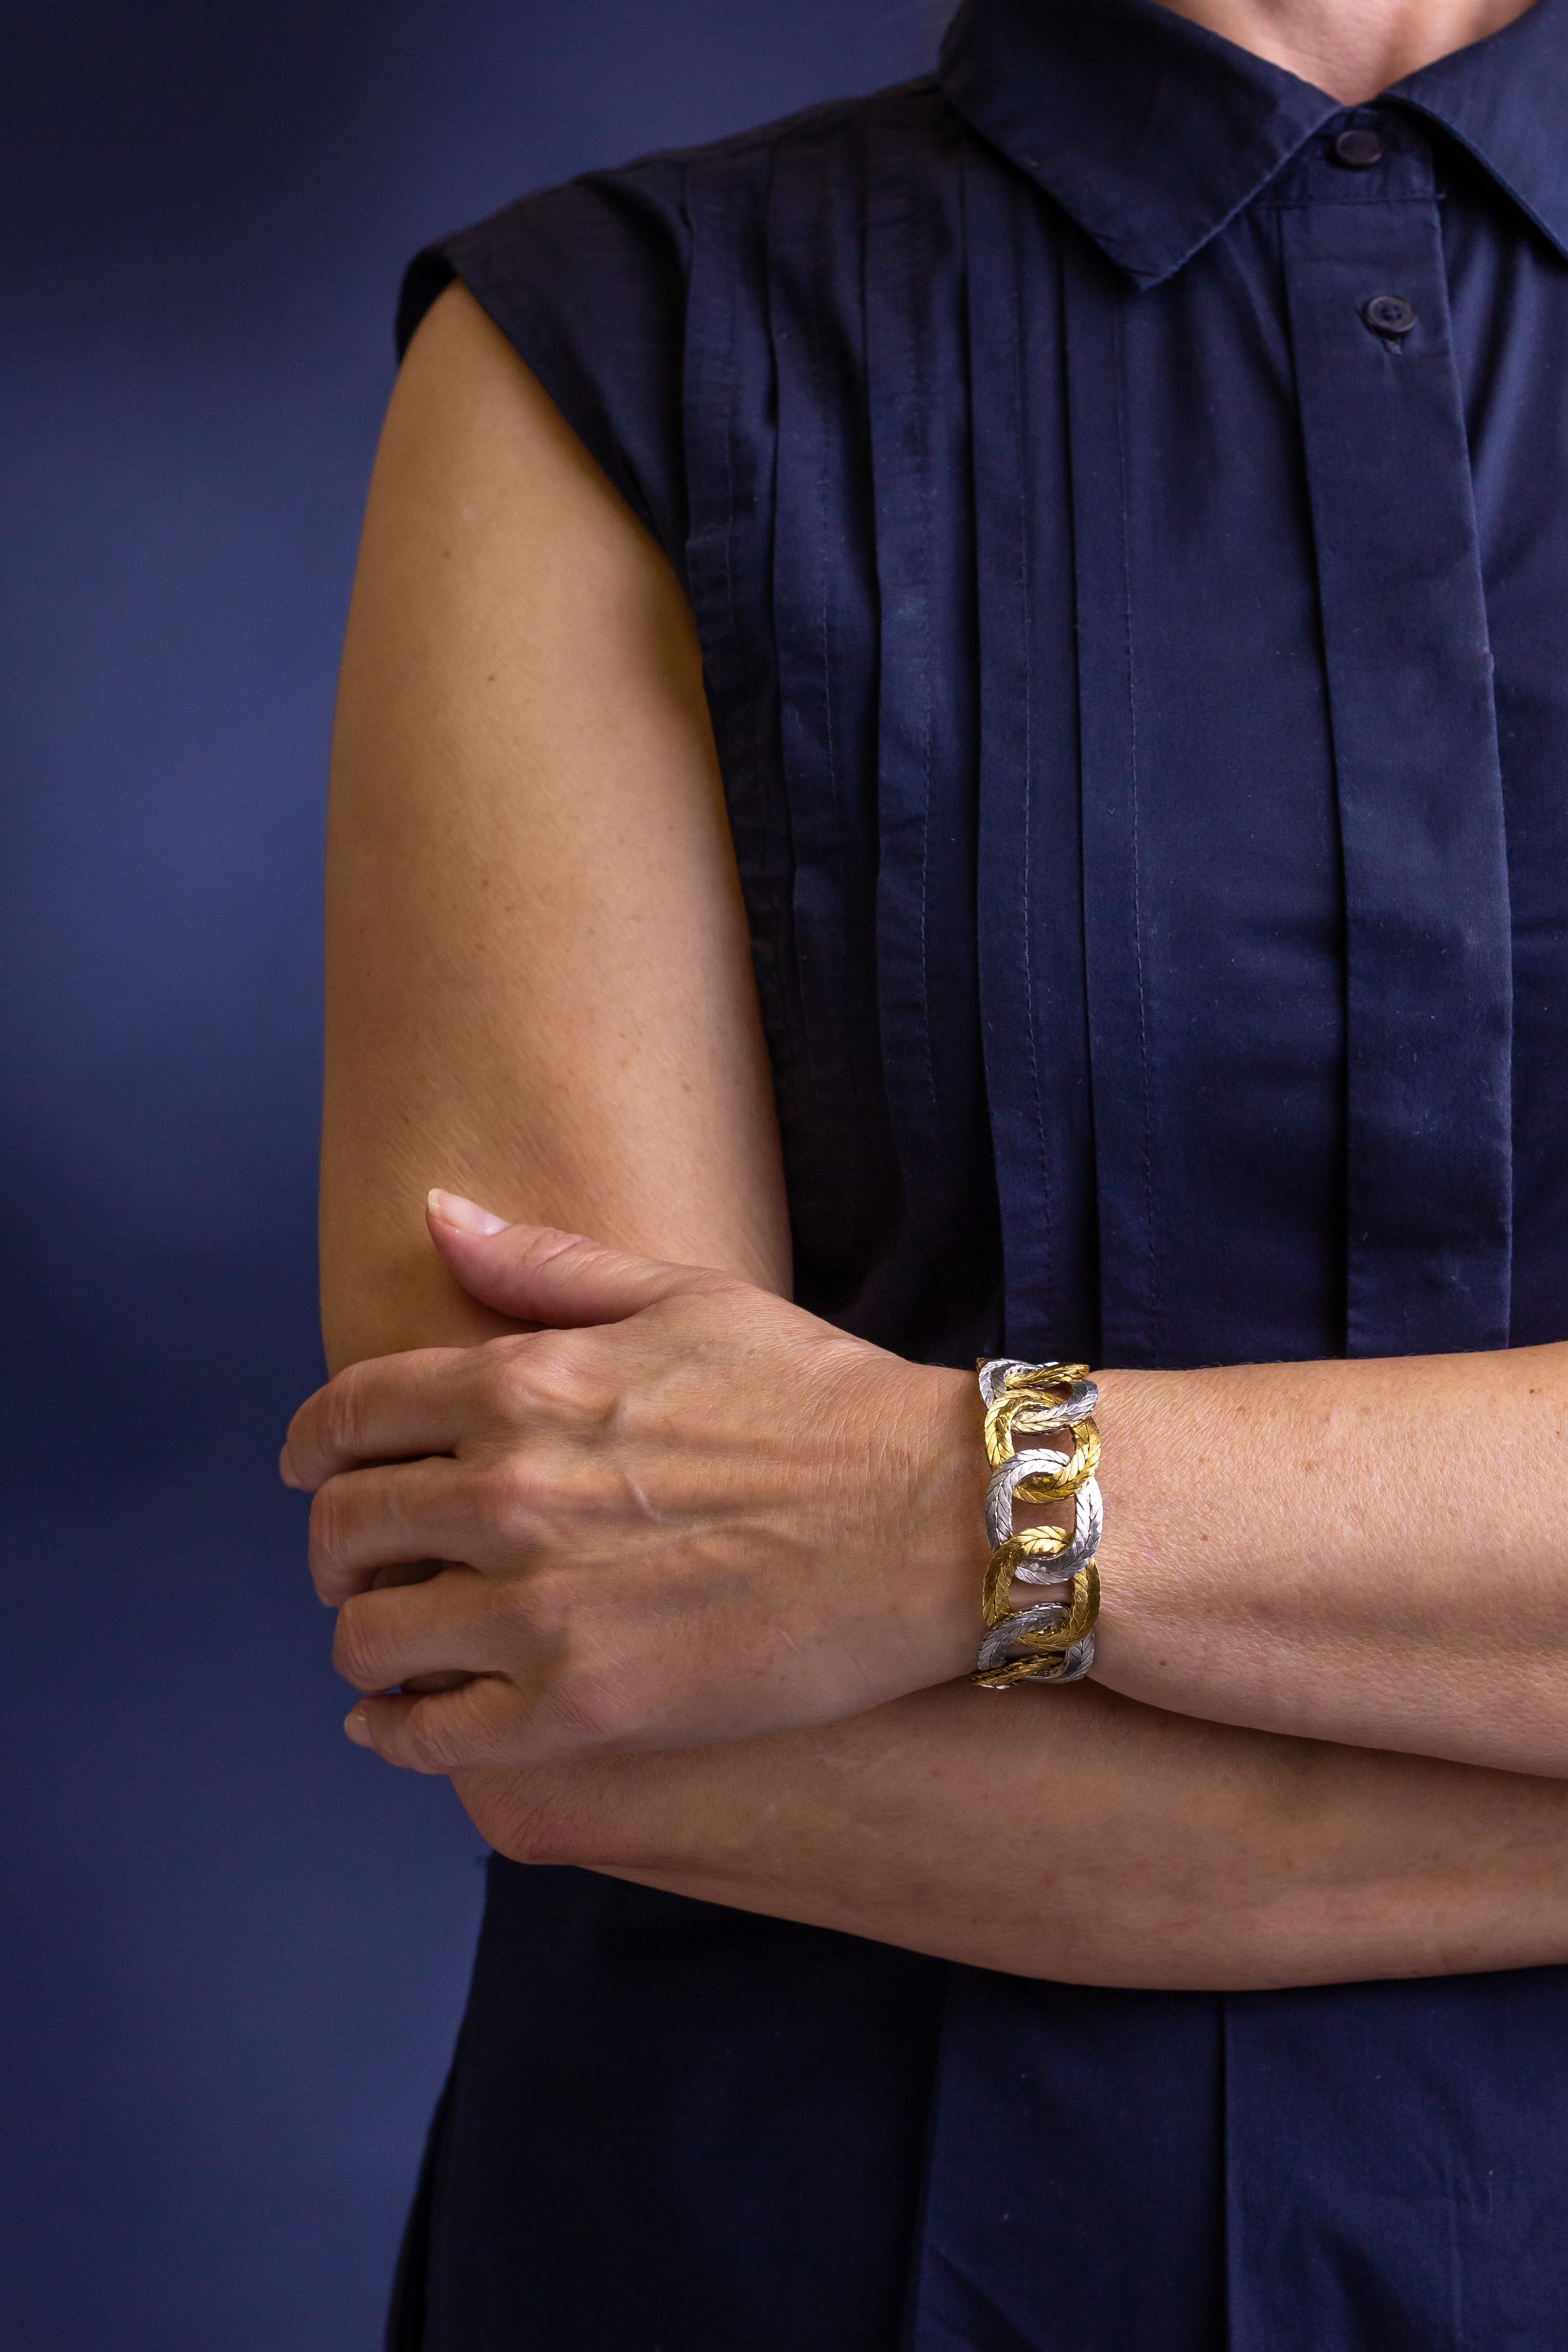 Nous sommes très heureux de vous présenter ce magnifique bracelet fabriqué à la main par Mario Buccellati. Le bracelet bicolore se compose d'ovales d'or tissés ou tressés en alternance d'or jaune 18 carats et d'or blanc 18 carats. Les maillons